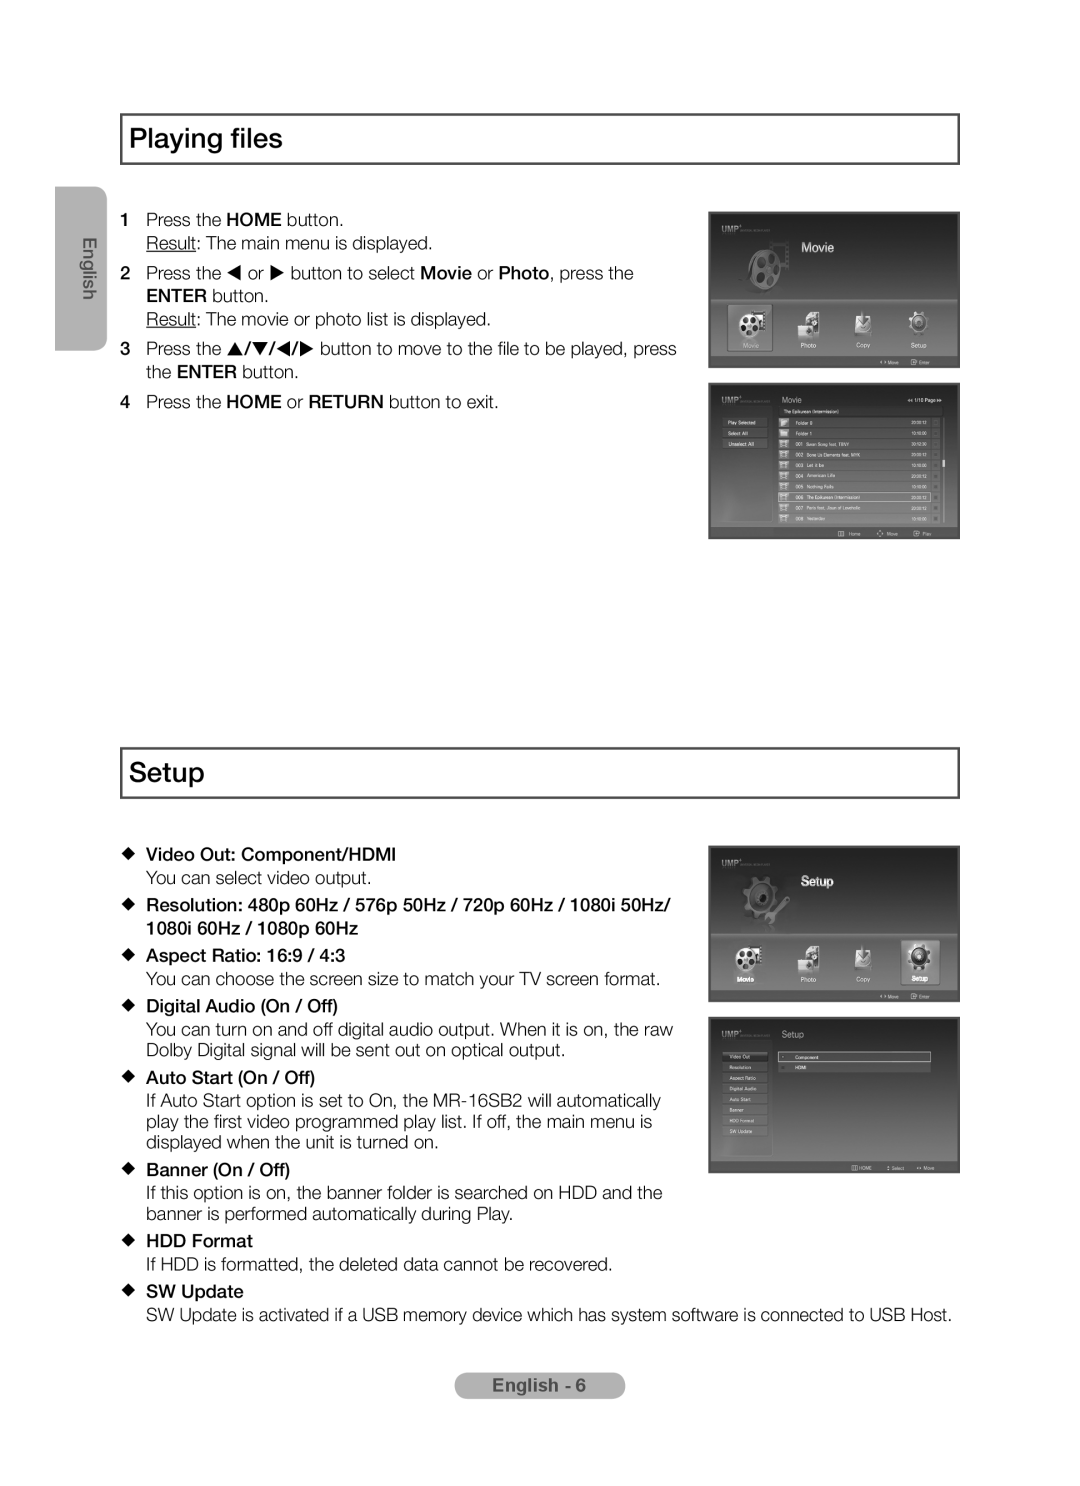 Samsung MR-16SB2 manual Playing files, Setup, English 